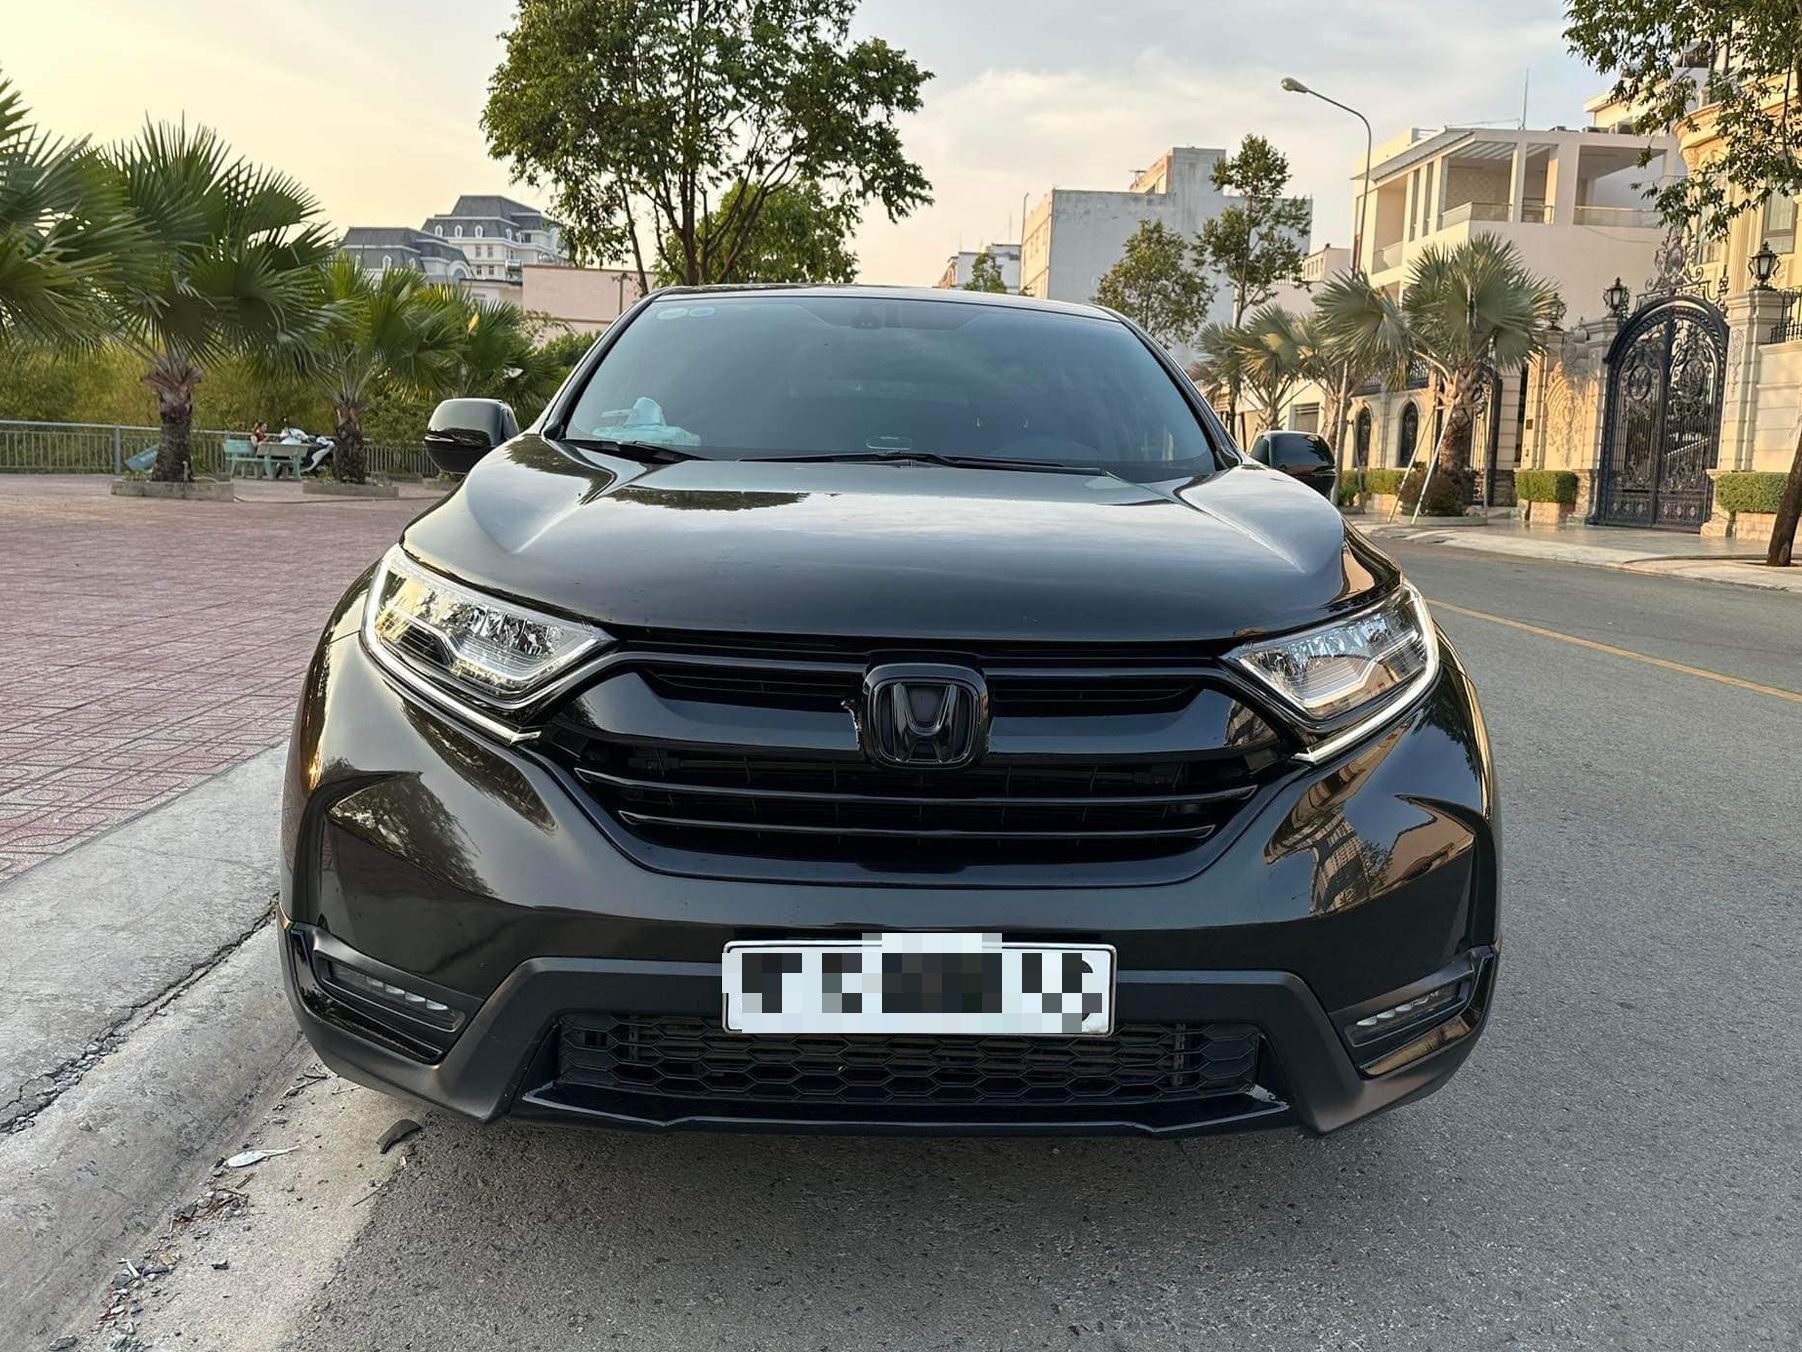 Xe Honda CRV 2019 nhập khẩu Thái Lan tại Honda ô tô Mỹ Đình Xe hơi miền  bắc bán xe mới xe cũ ô tô các hãng xe hơi tại miền bắc